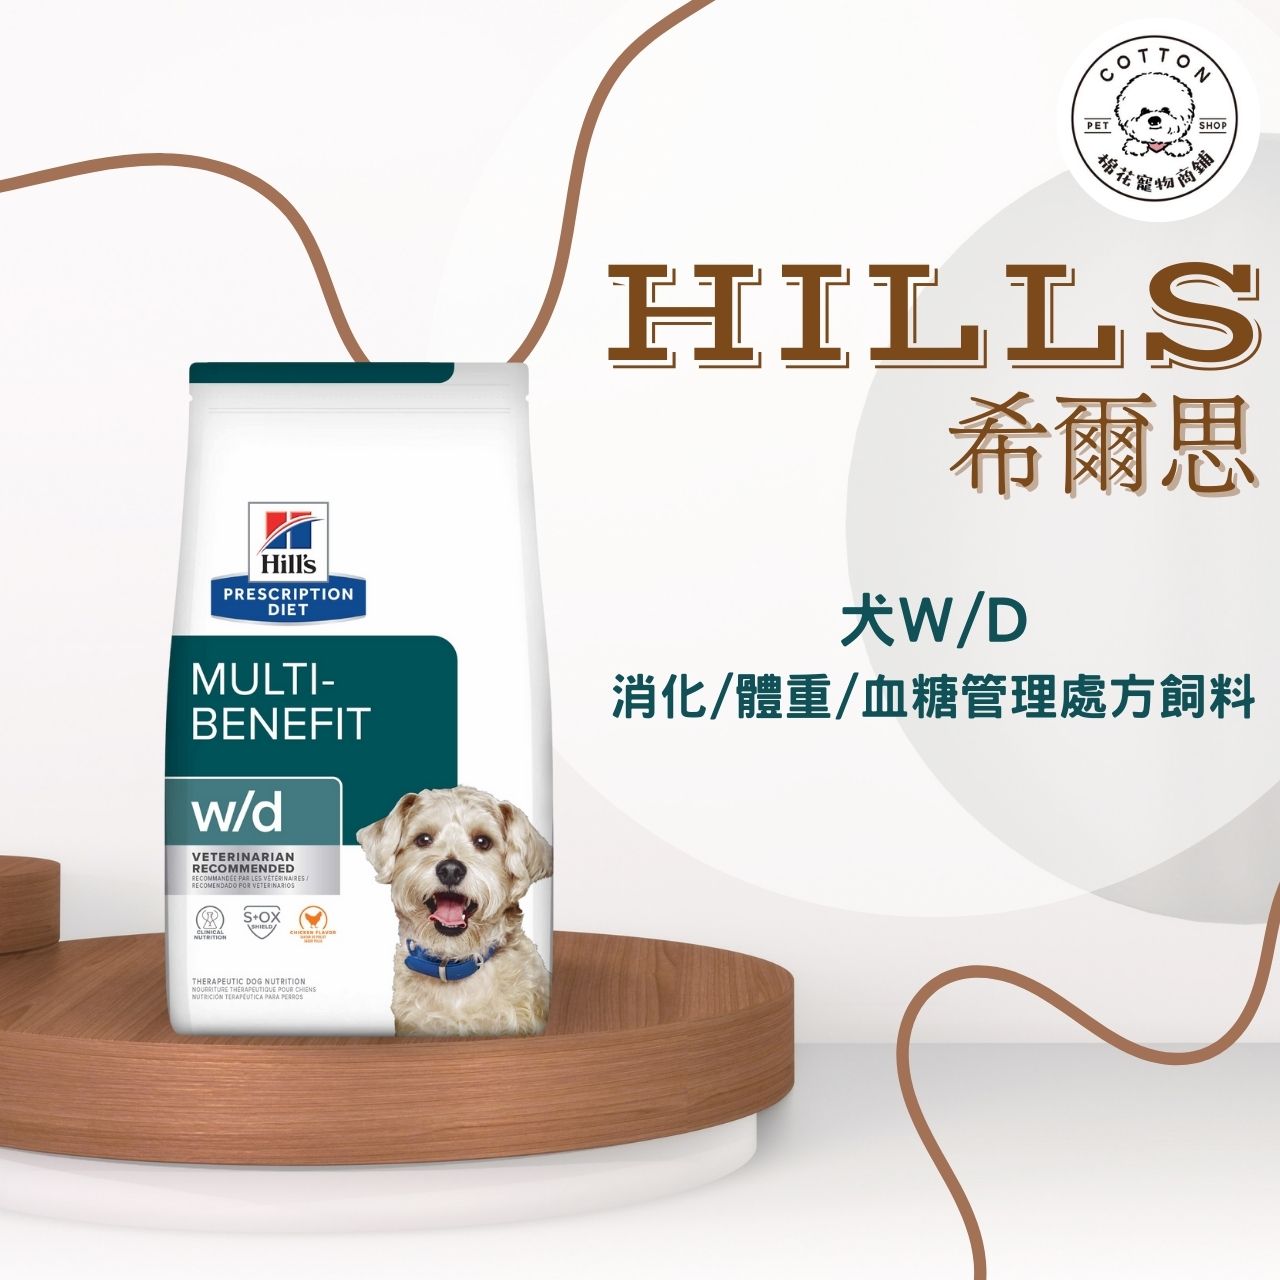 棉花寵物❤️【Hills 希爾思處方】犬用W/D 多重管理 27.5磅(狗wd 處方飼料 體重管理 消化)